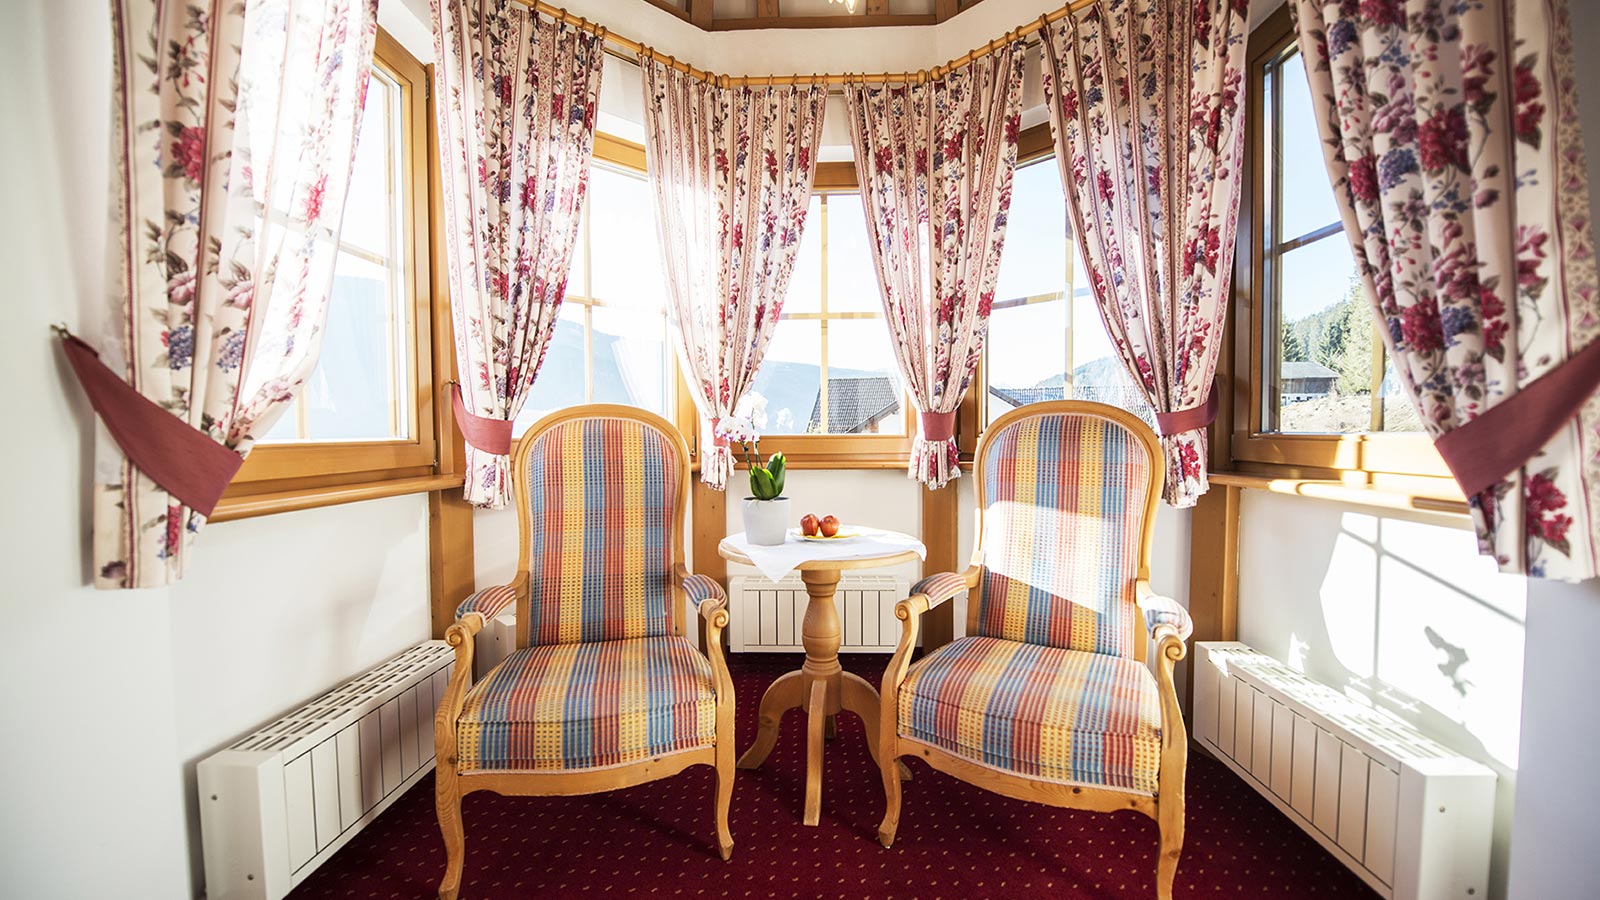 Elegante stanza nella torretta del nostro albergo in Val Casies con raffinate poltrone e ampie finestre